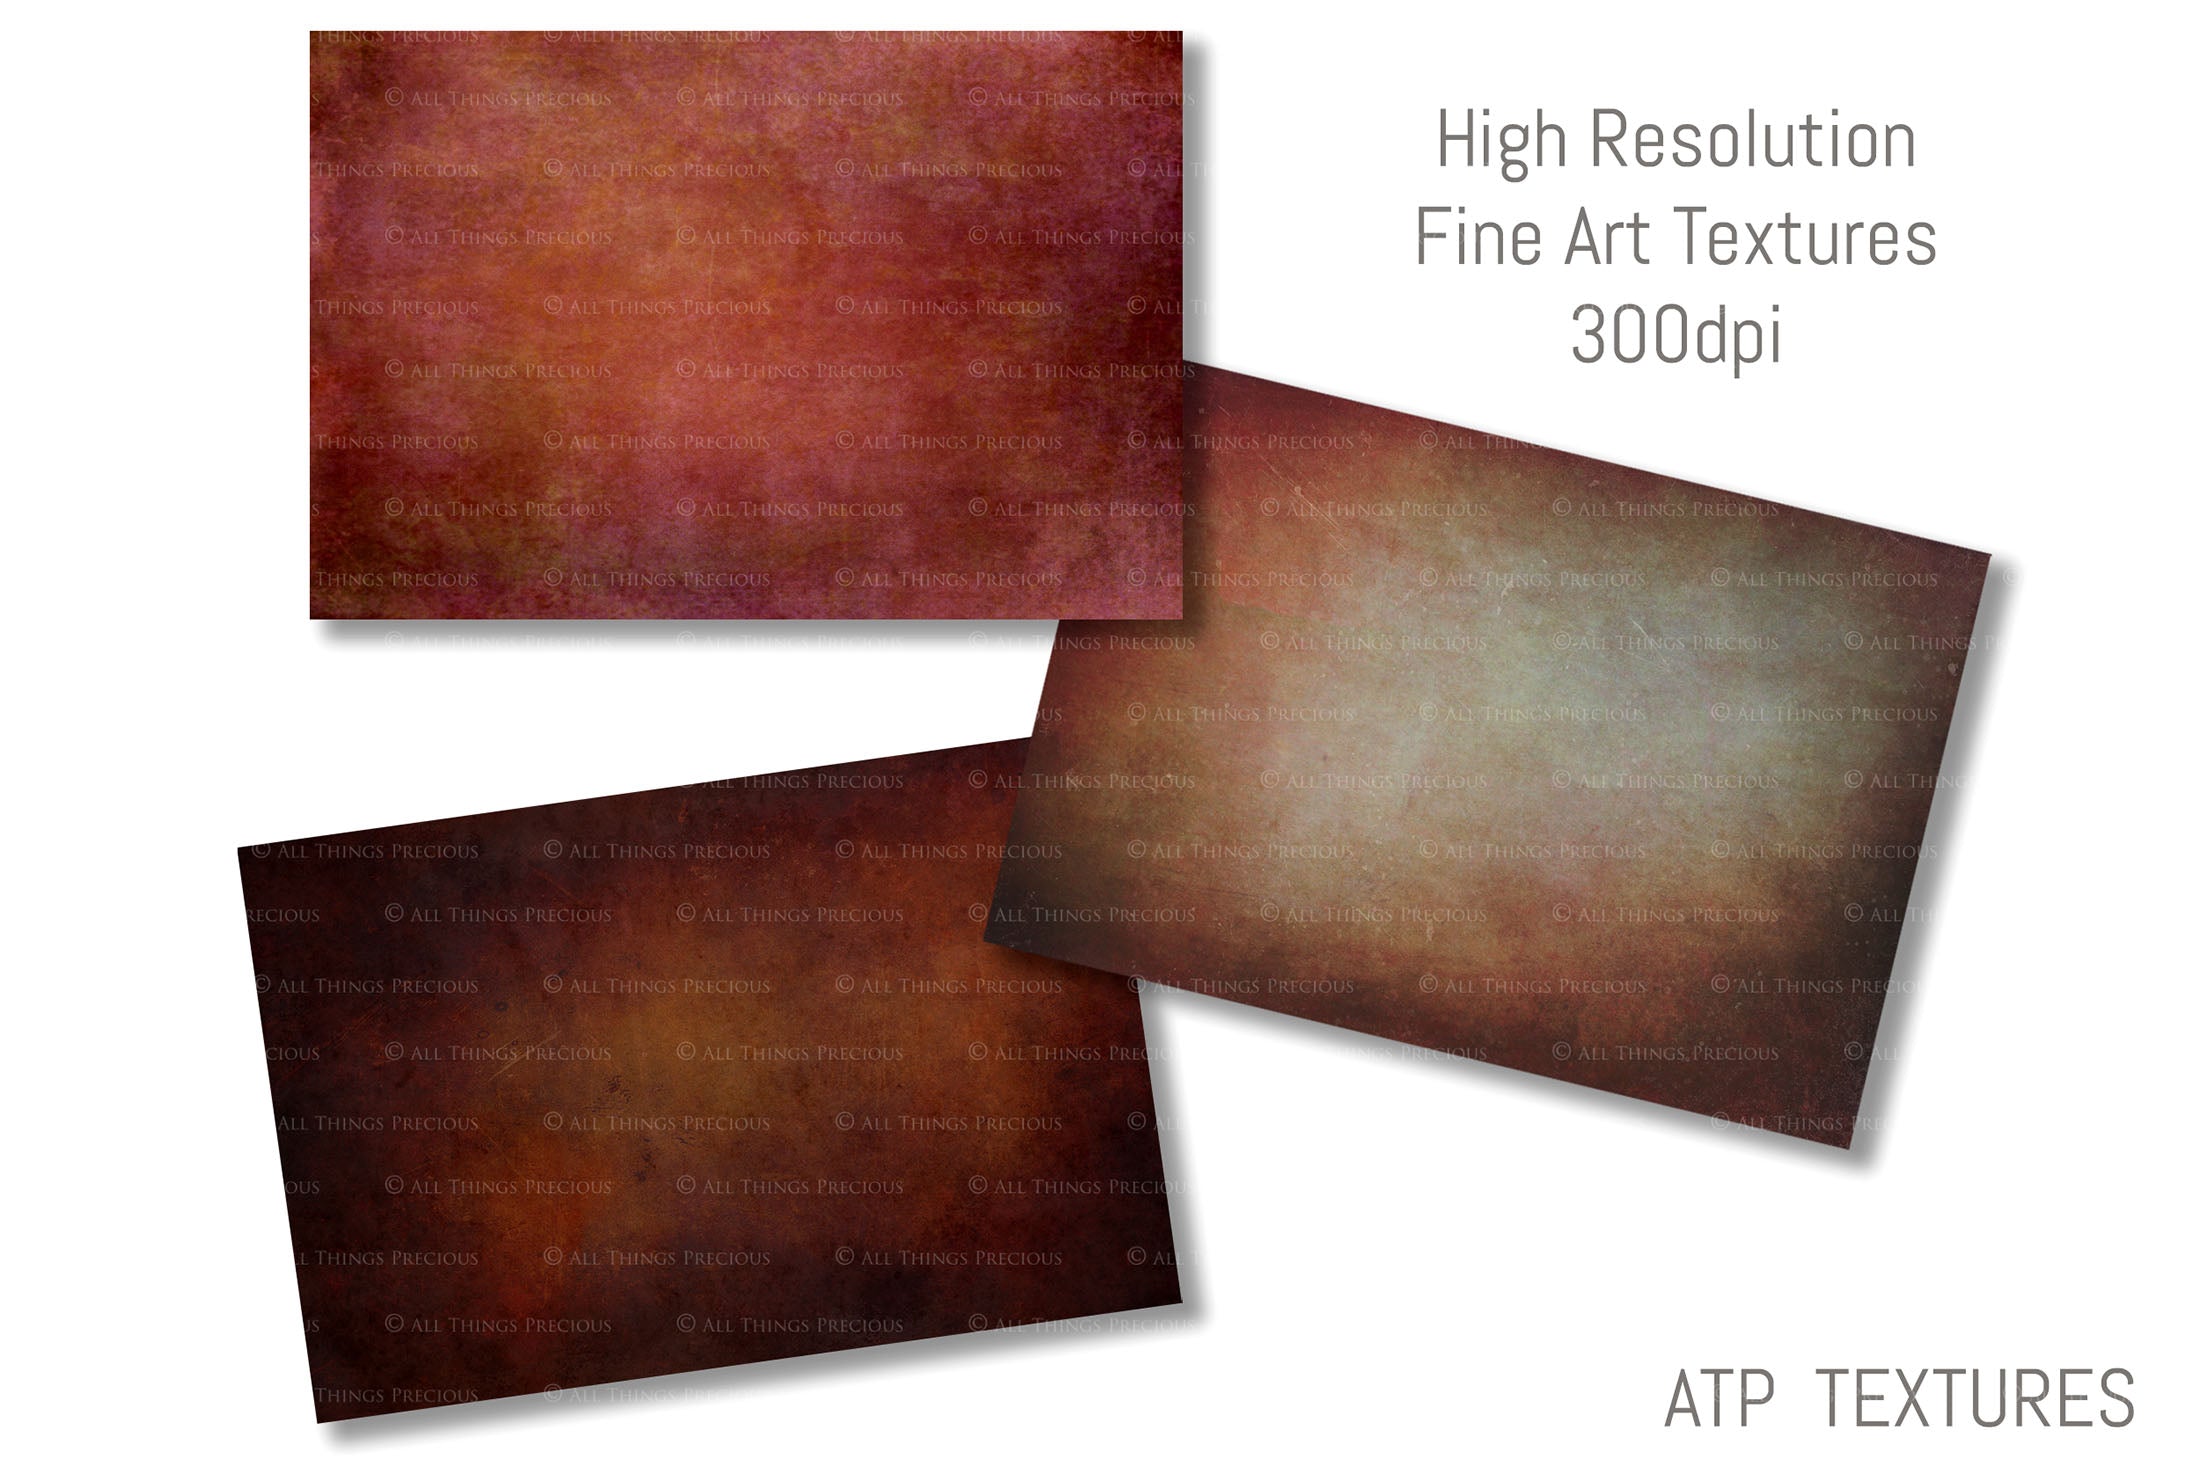 ATP Textures